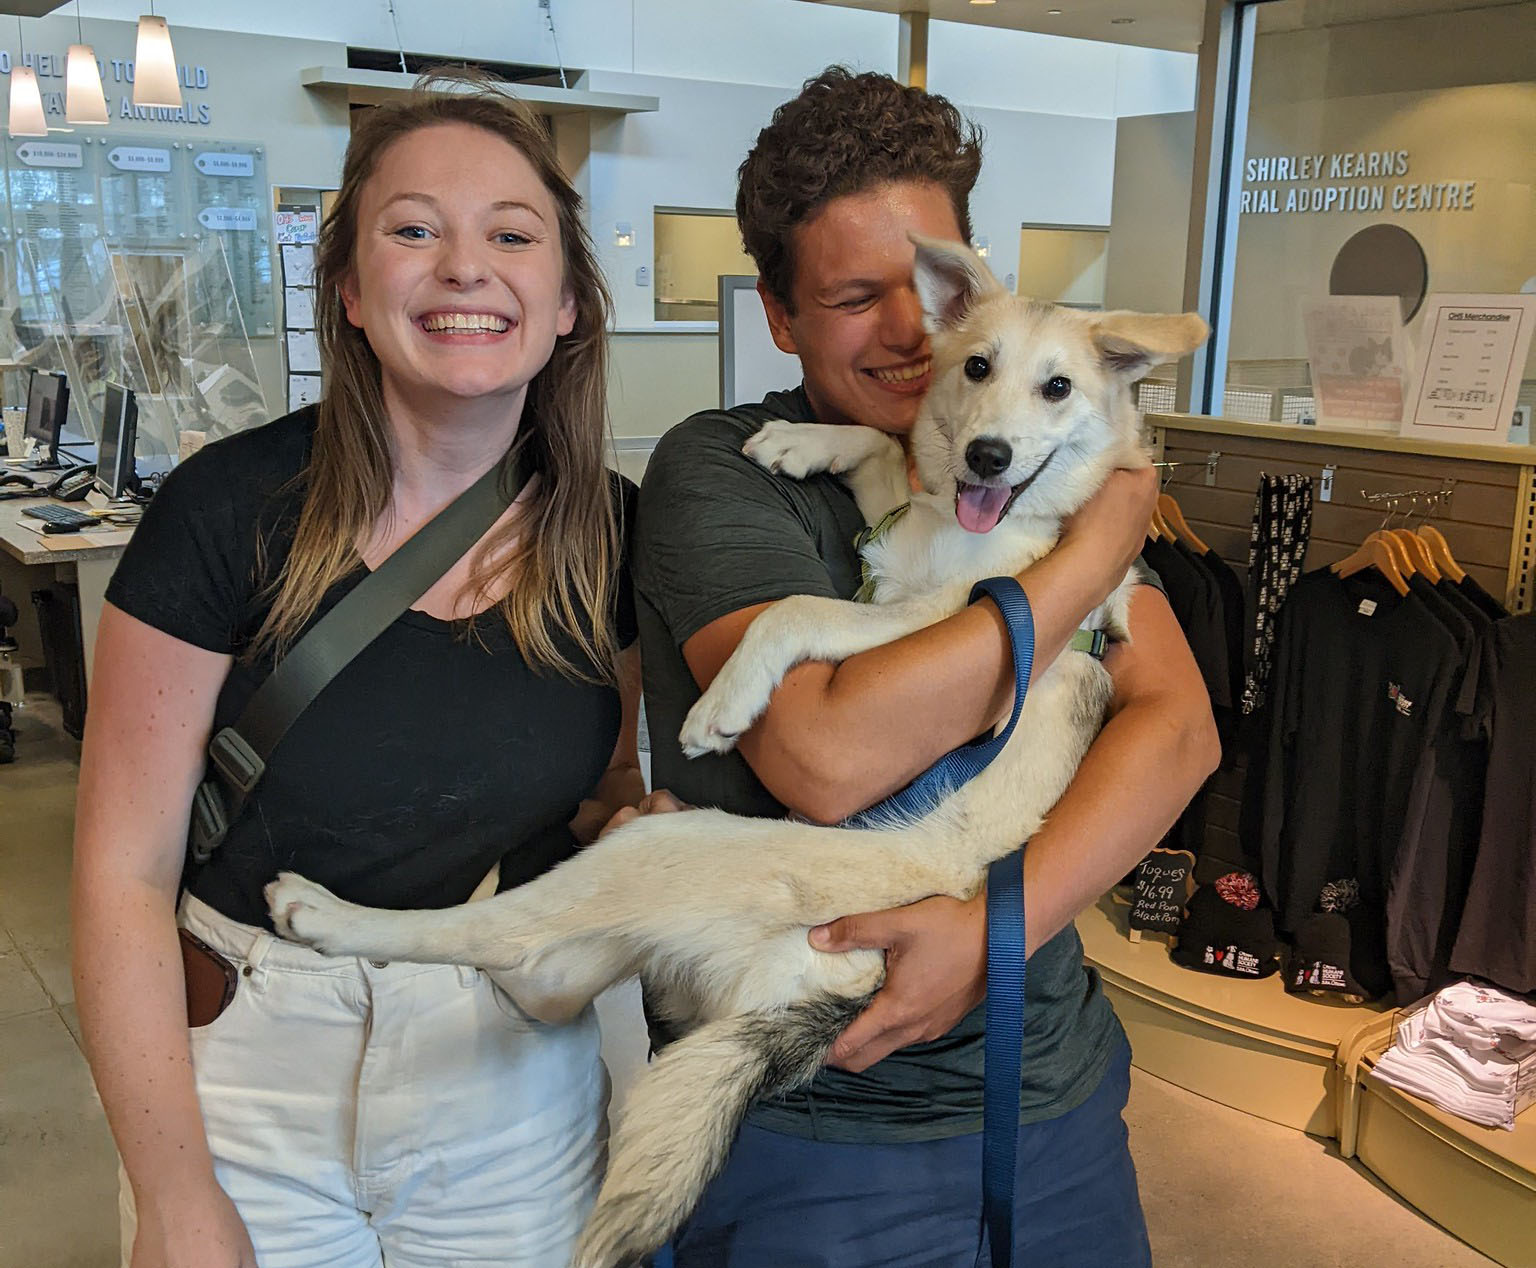 The “New” Way to Adopt - Ottawa Humane Society